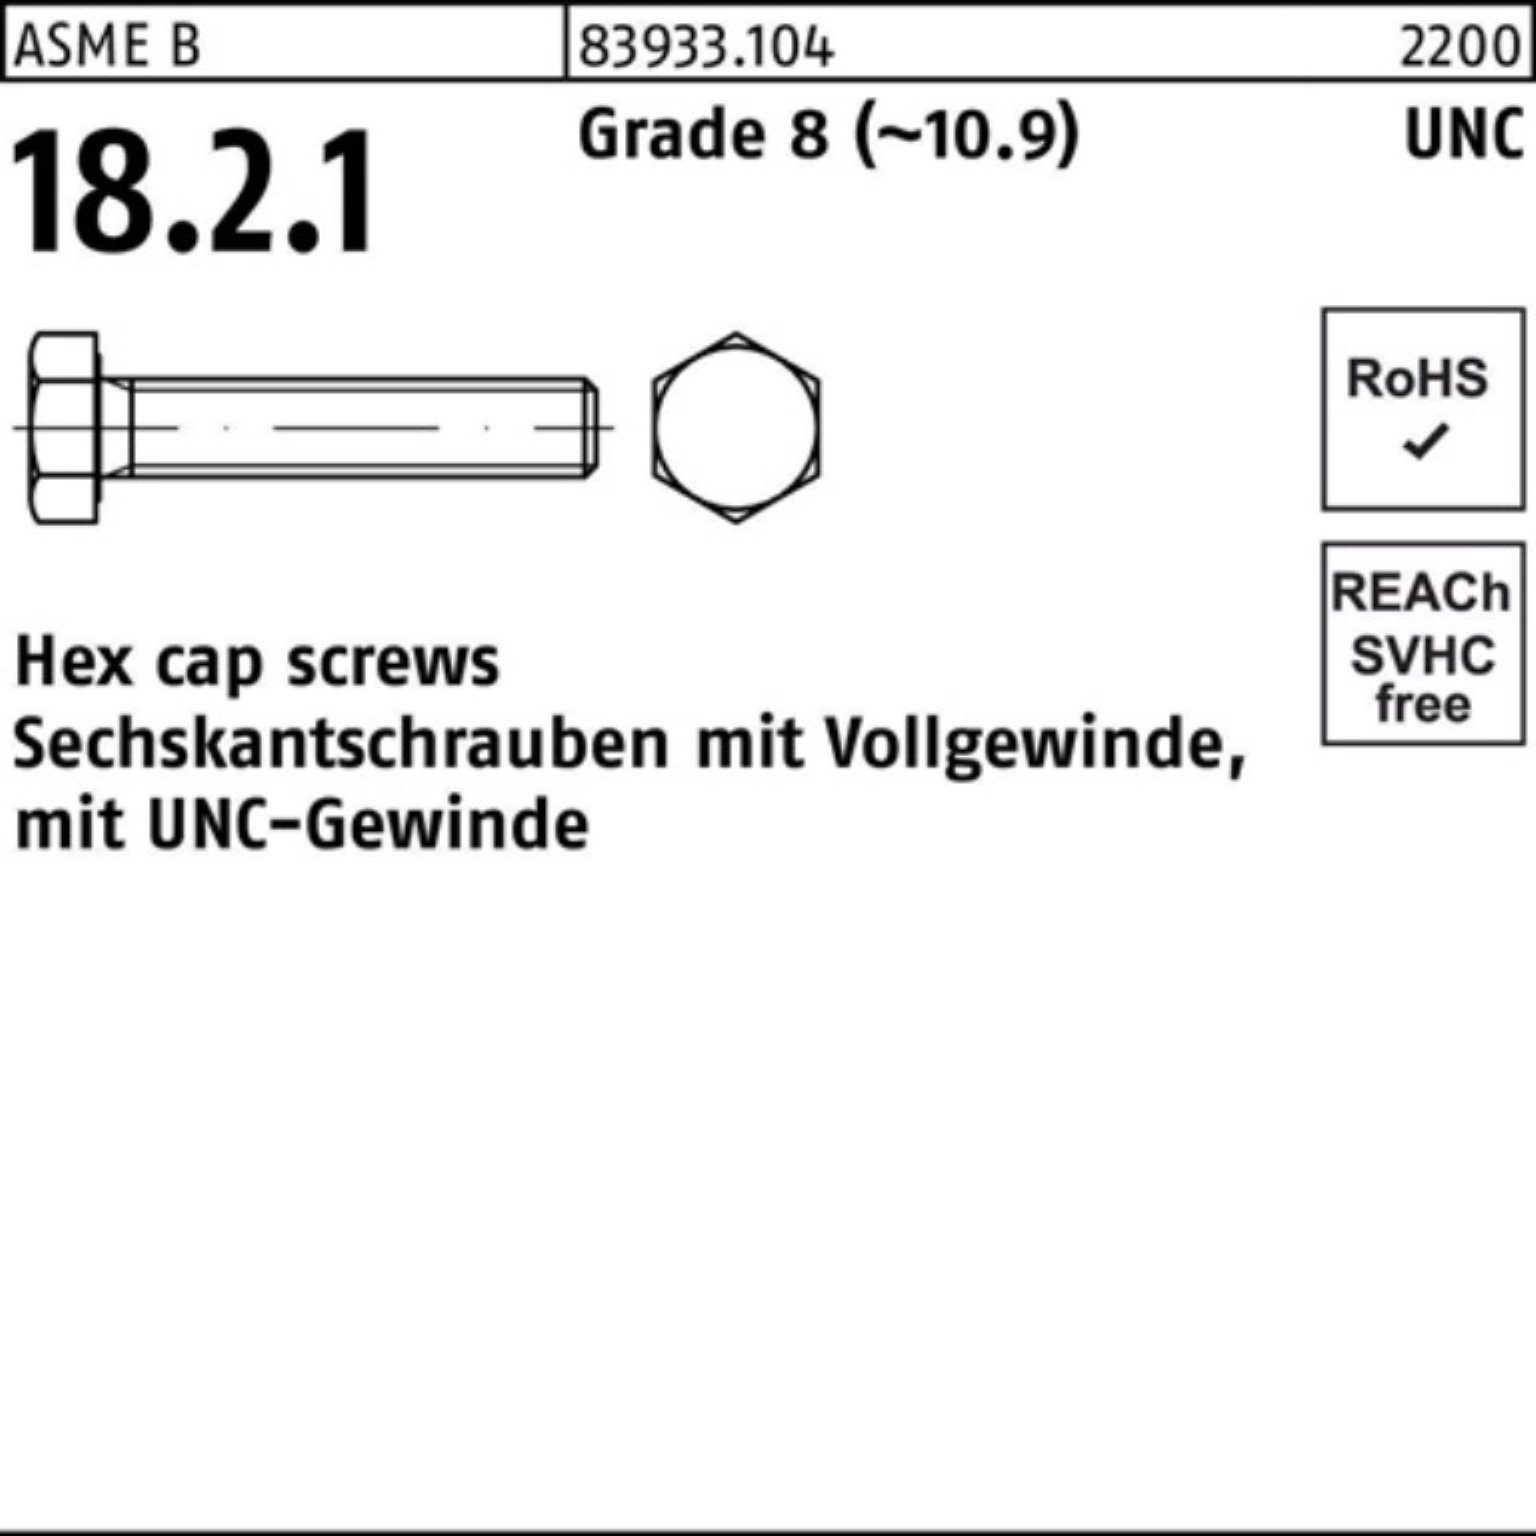 Reyher Sechskantschraube 100er Pack Sechskantschraube R 83933 UNC-Gewinde VG 5/16x 7/8 Grade 8